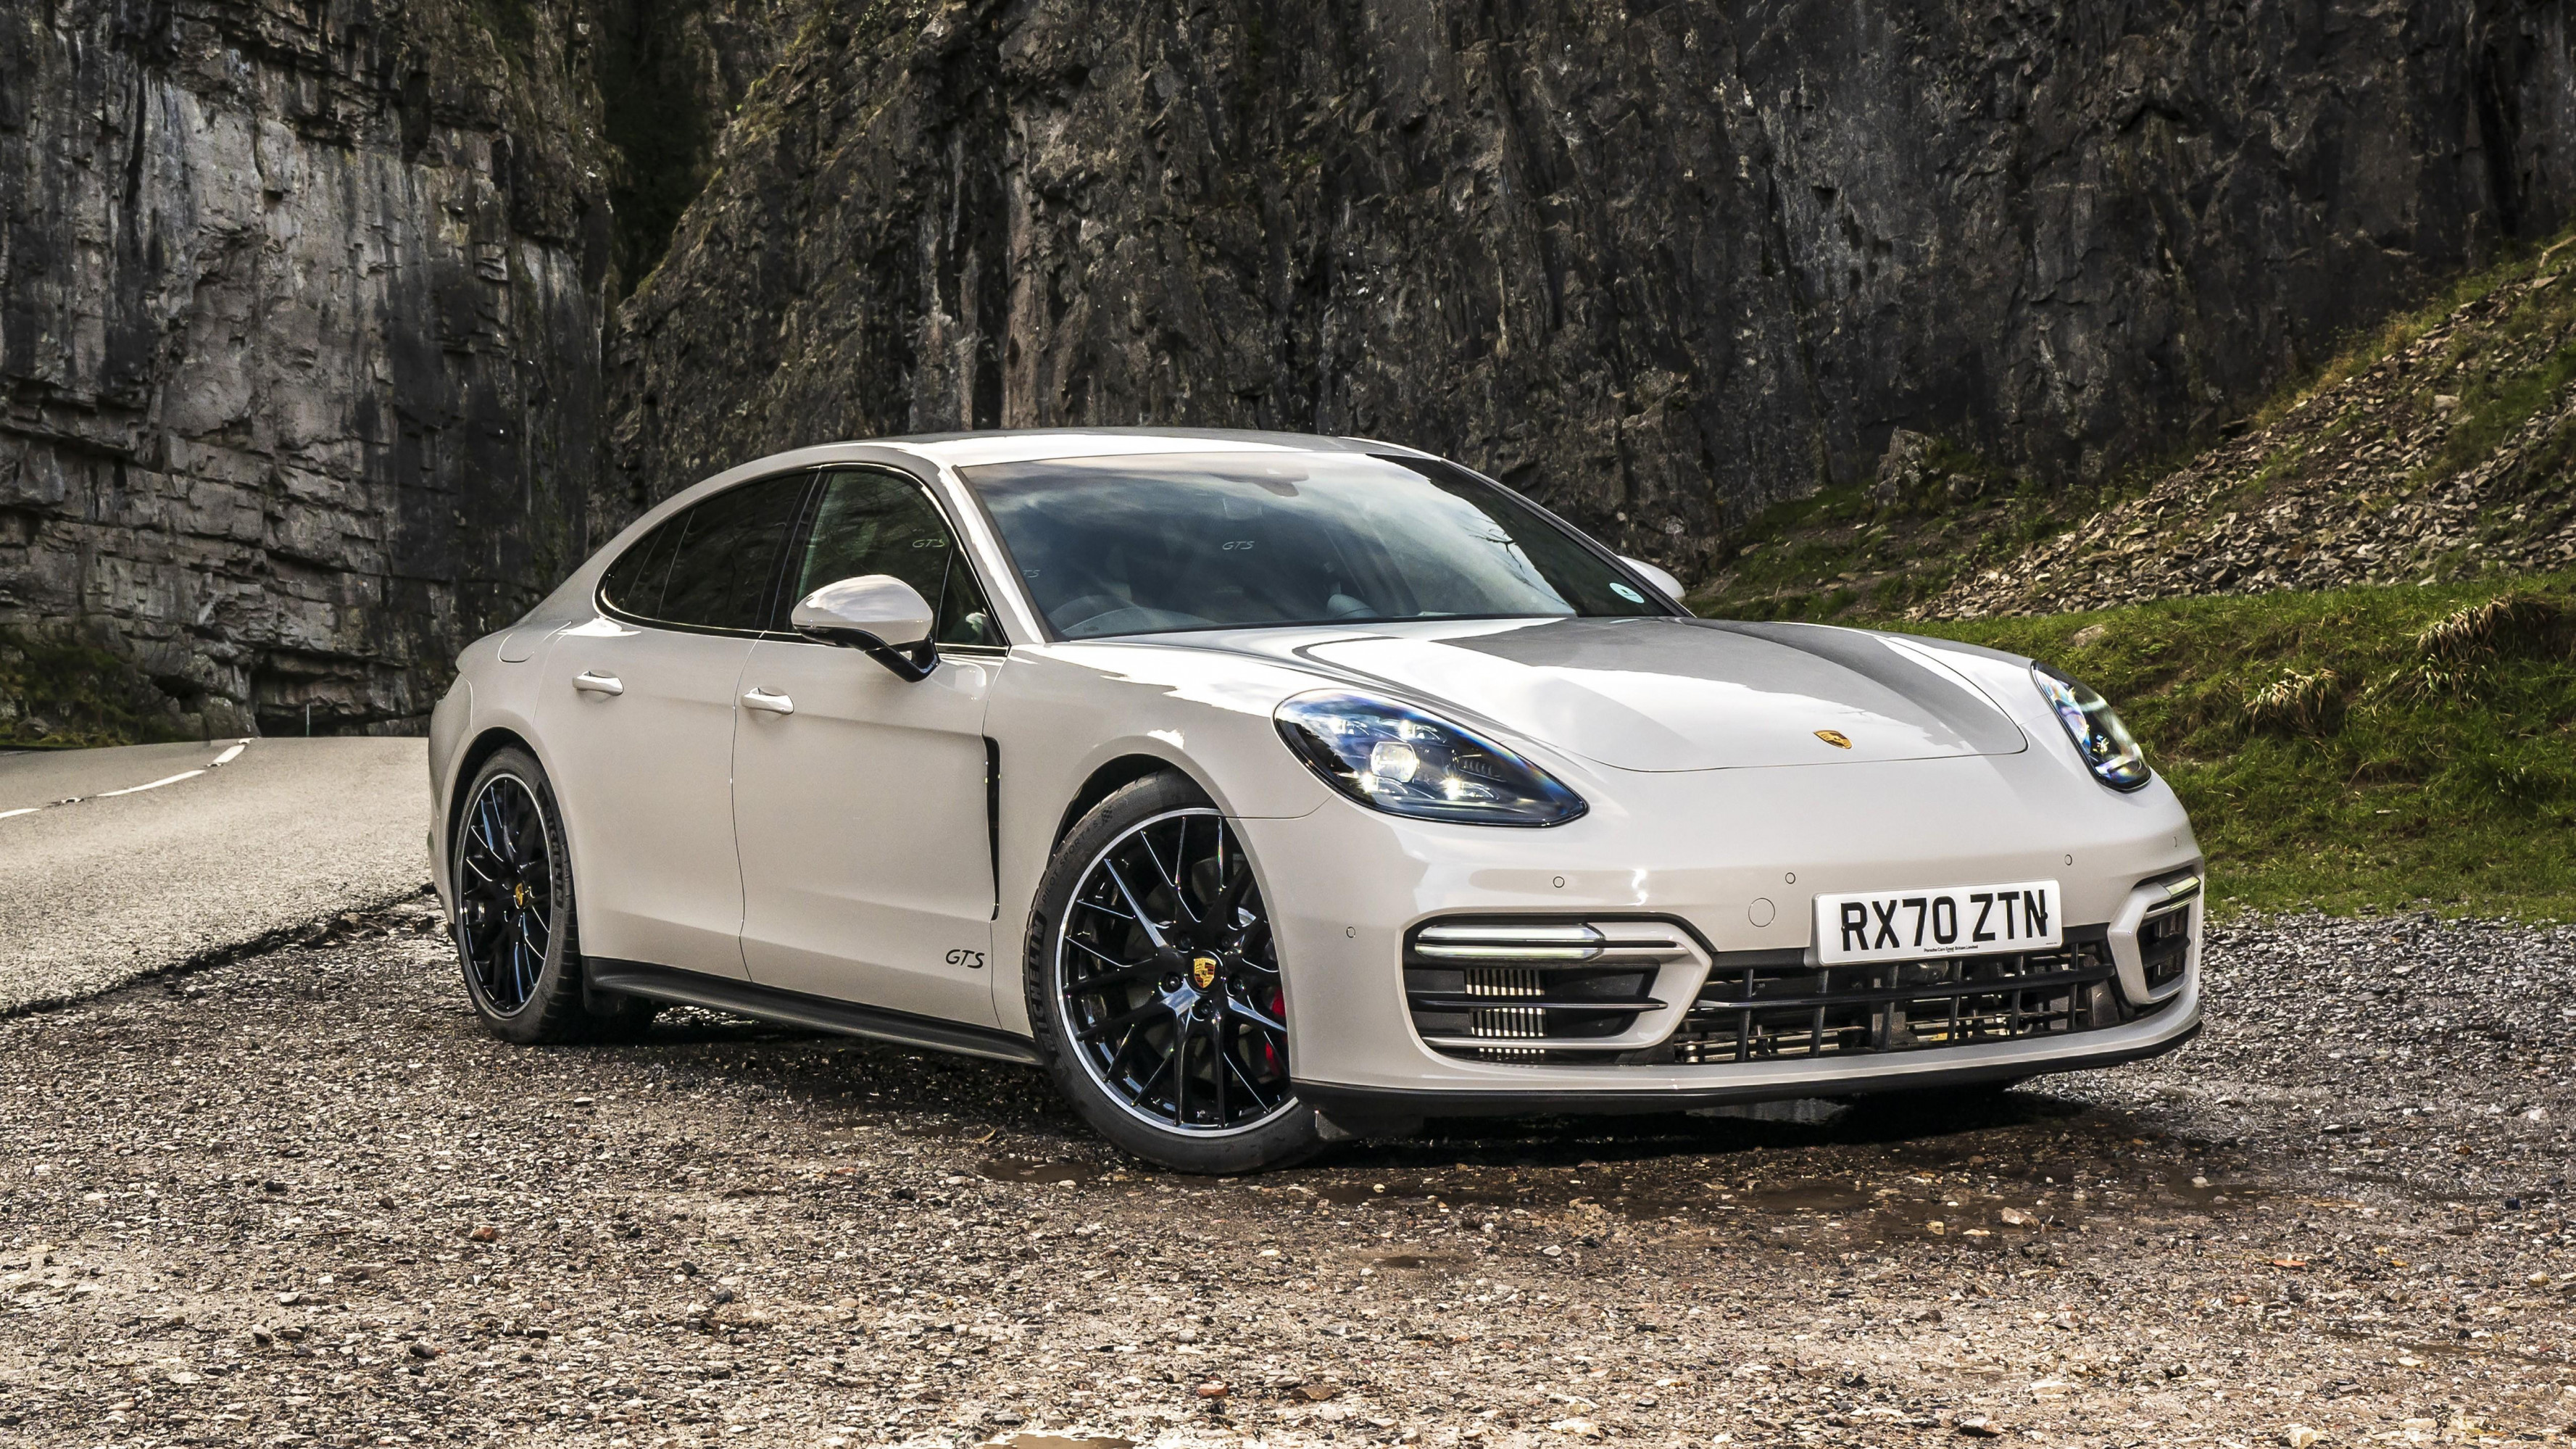 Porsche Panamera GTS 2020, High-resolution desktop wallpaper, Sports car performance, Luxurious aesthetics, 3560x2000 HD Desktop